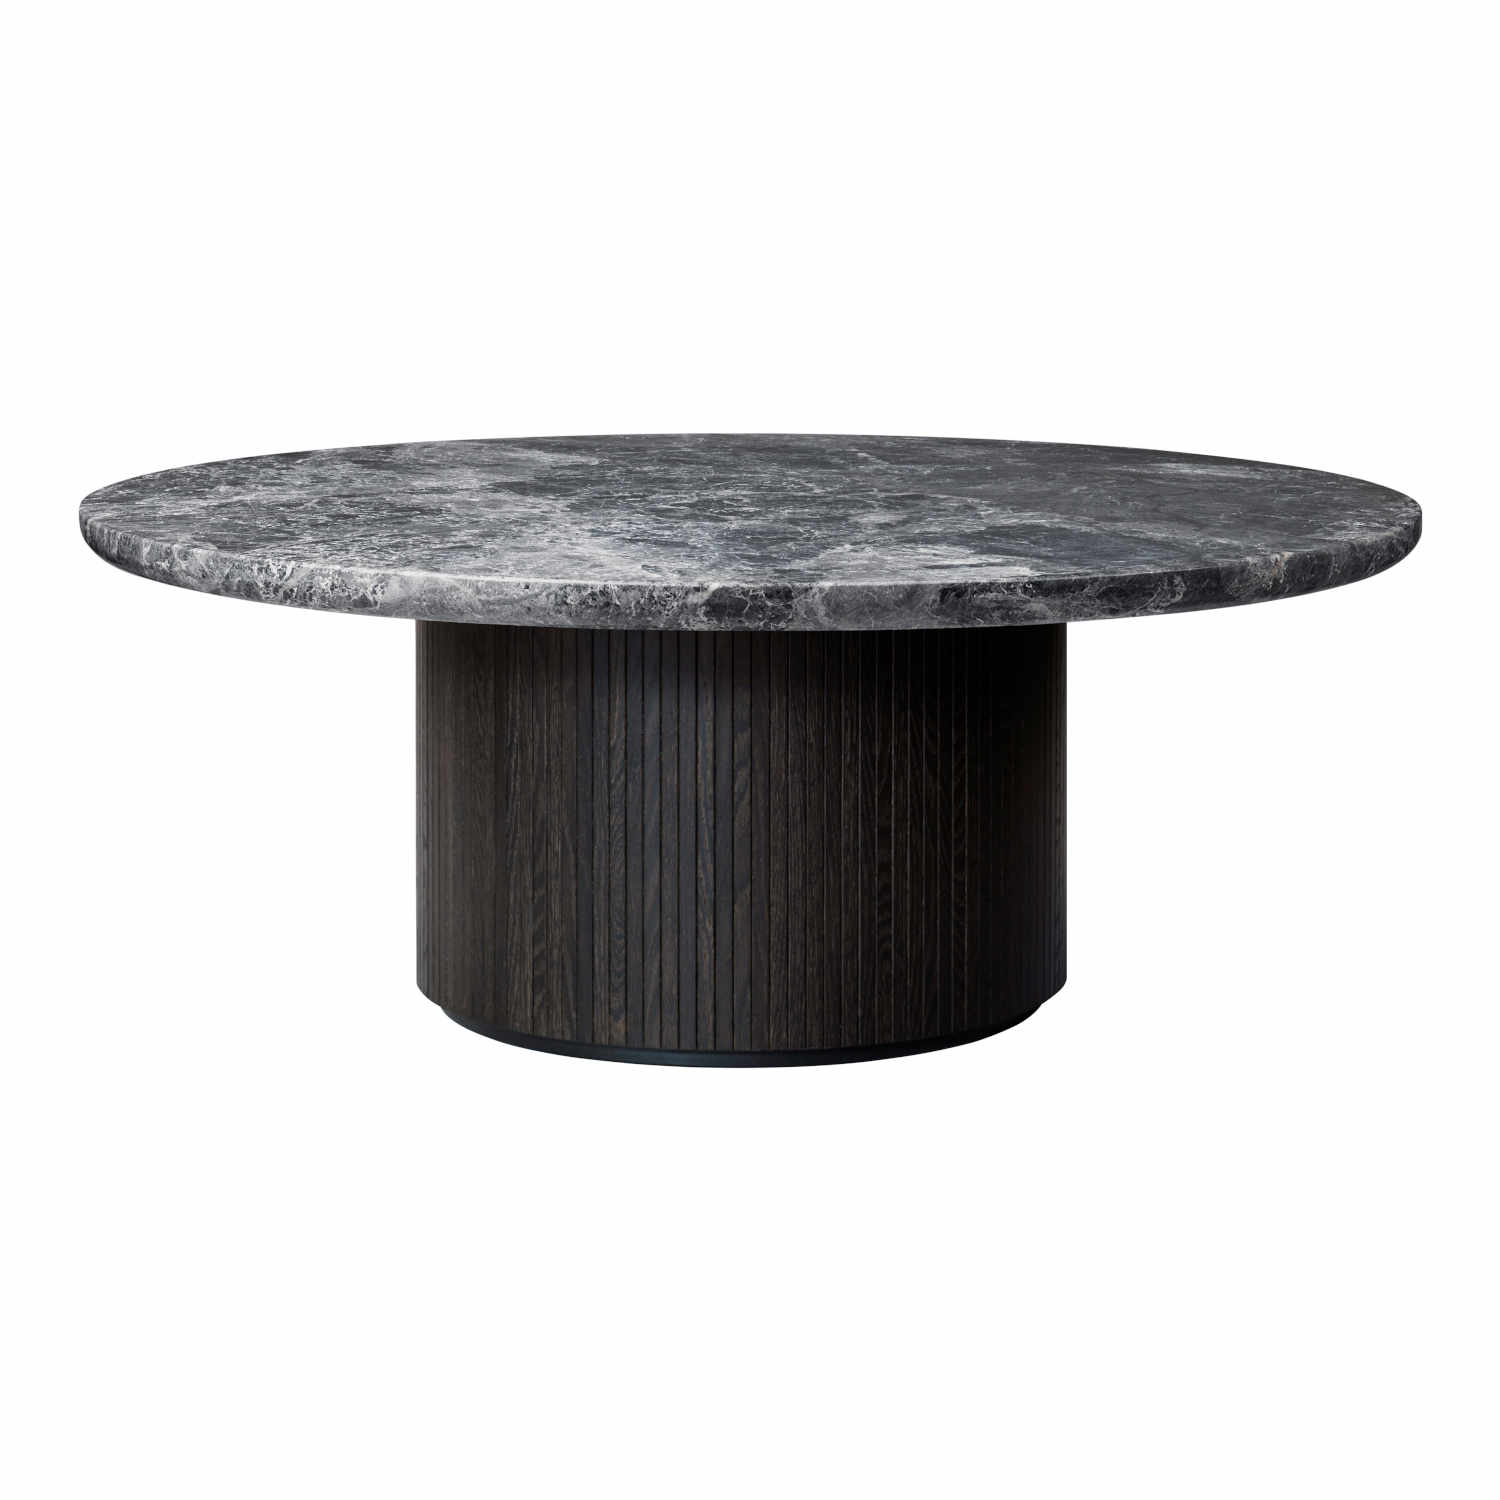 Moon Coffee Table Beistelltisch, Grösse ø 60 cm, Ausführung holz, stained veneer oak (braun/schwarz lackiert) von GUBI